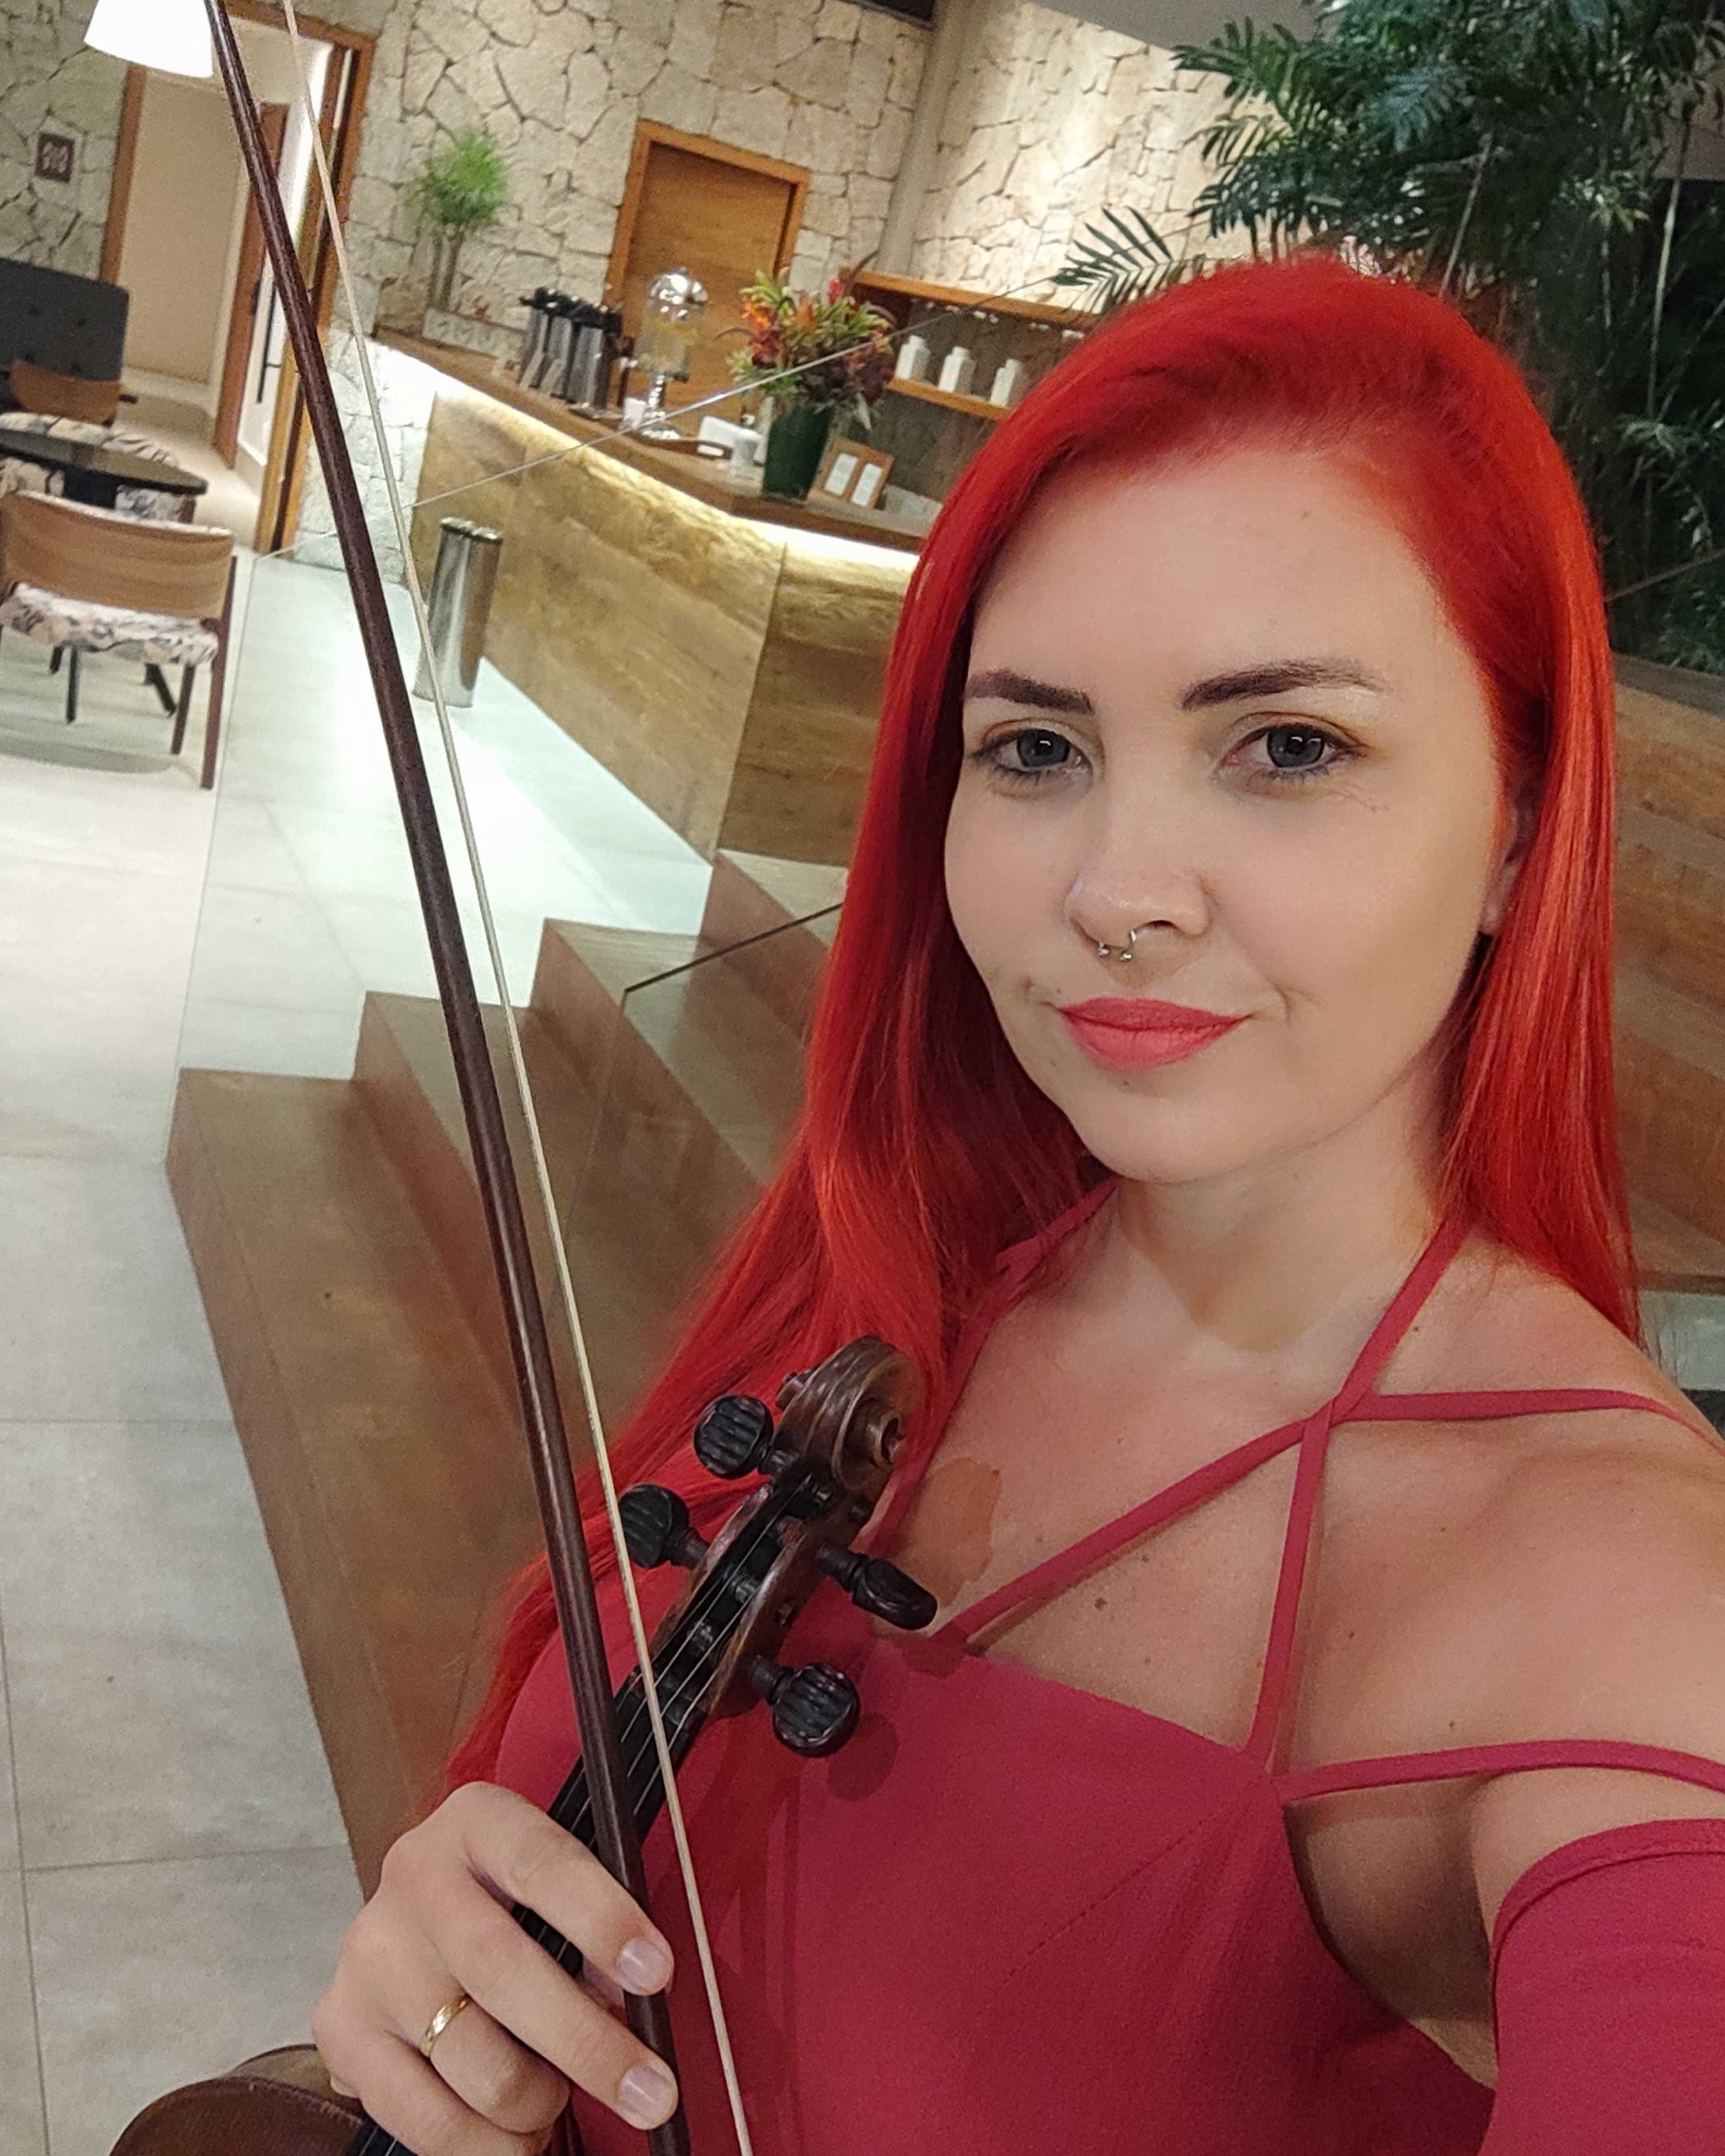 Violinista para casamentos, eventos, shows e aulas de violino.